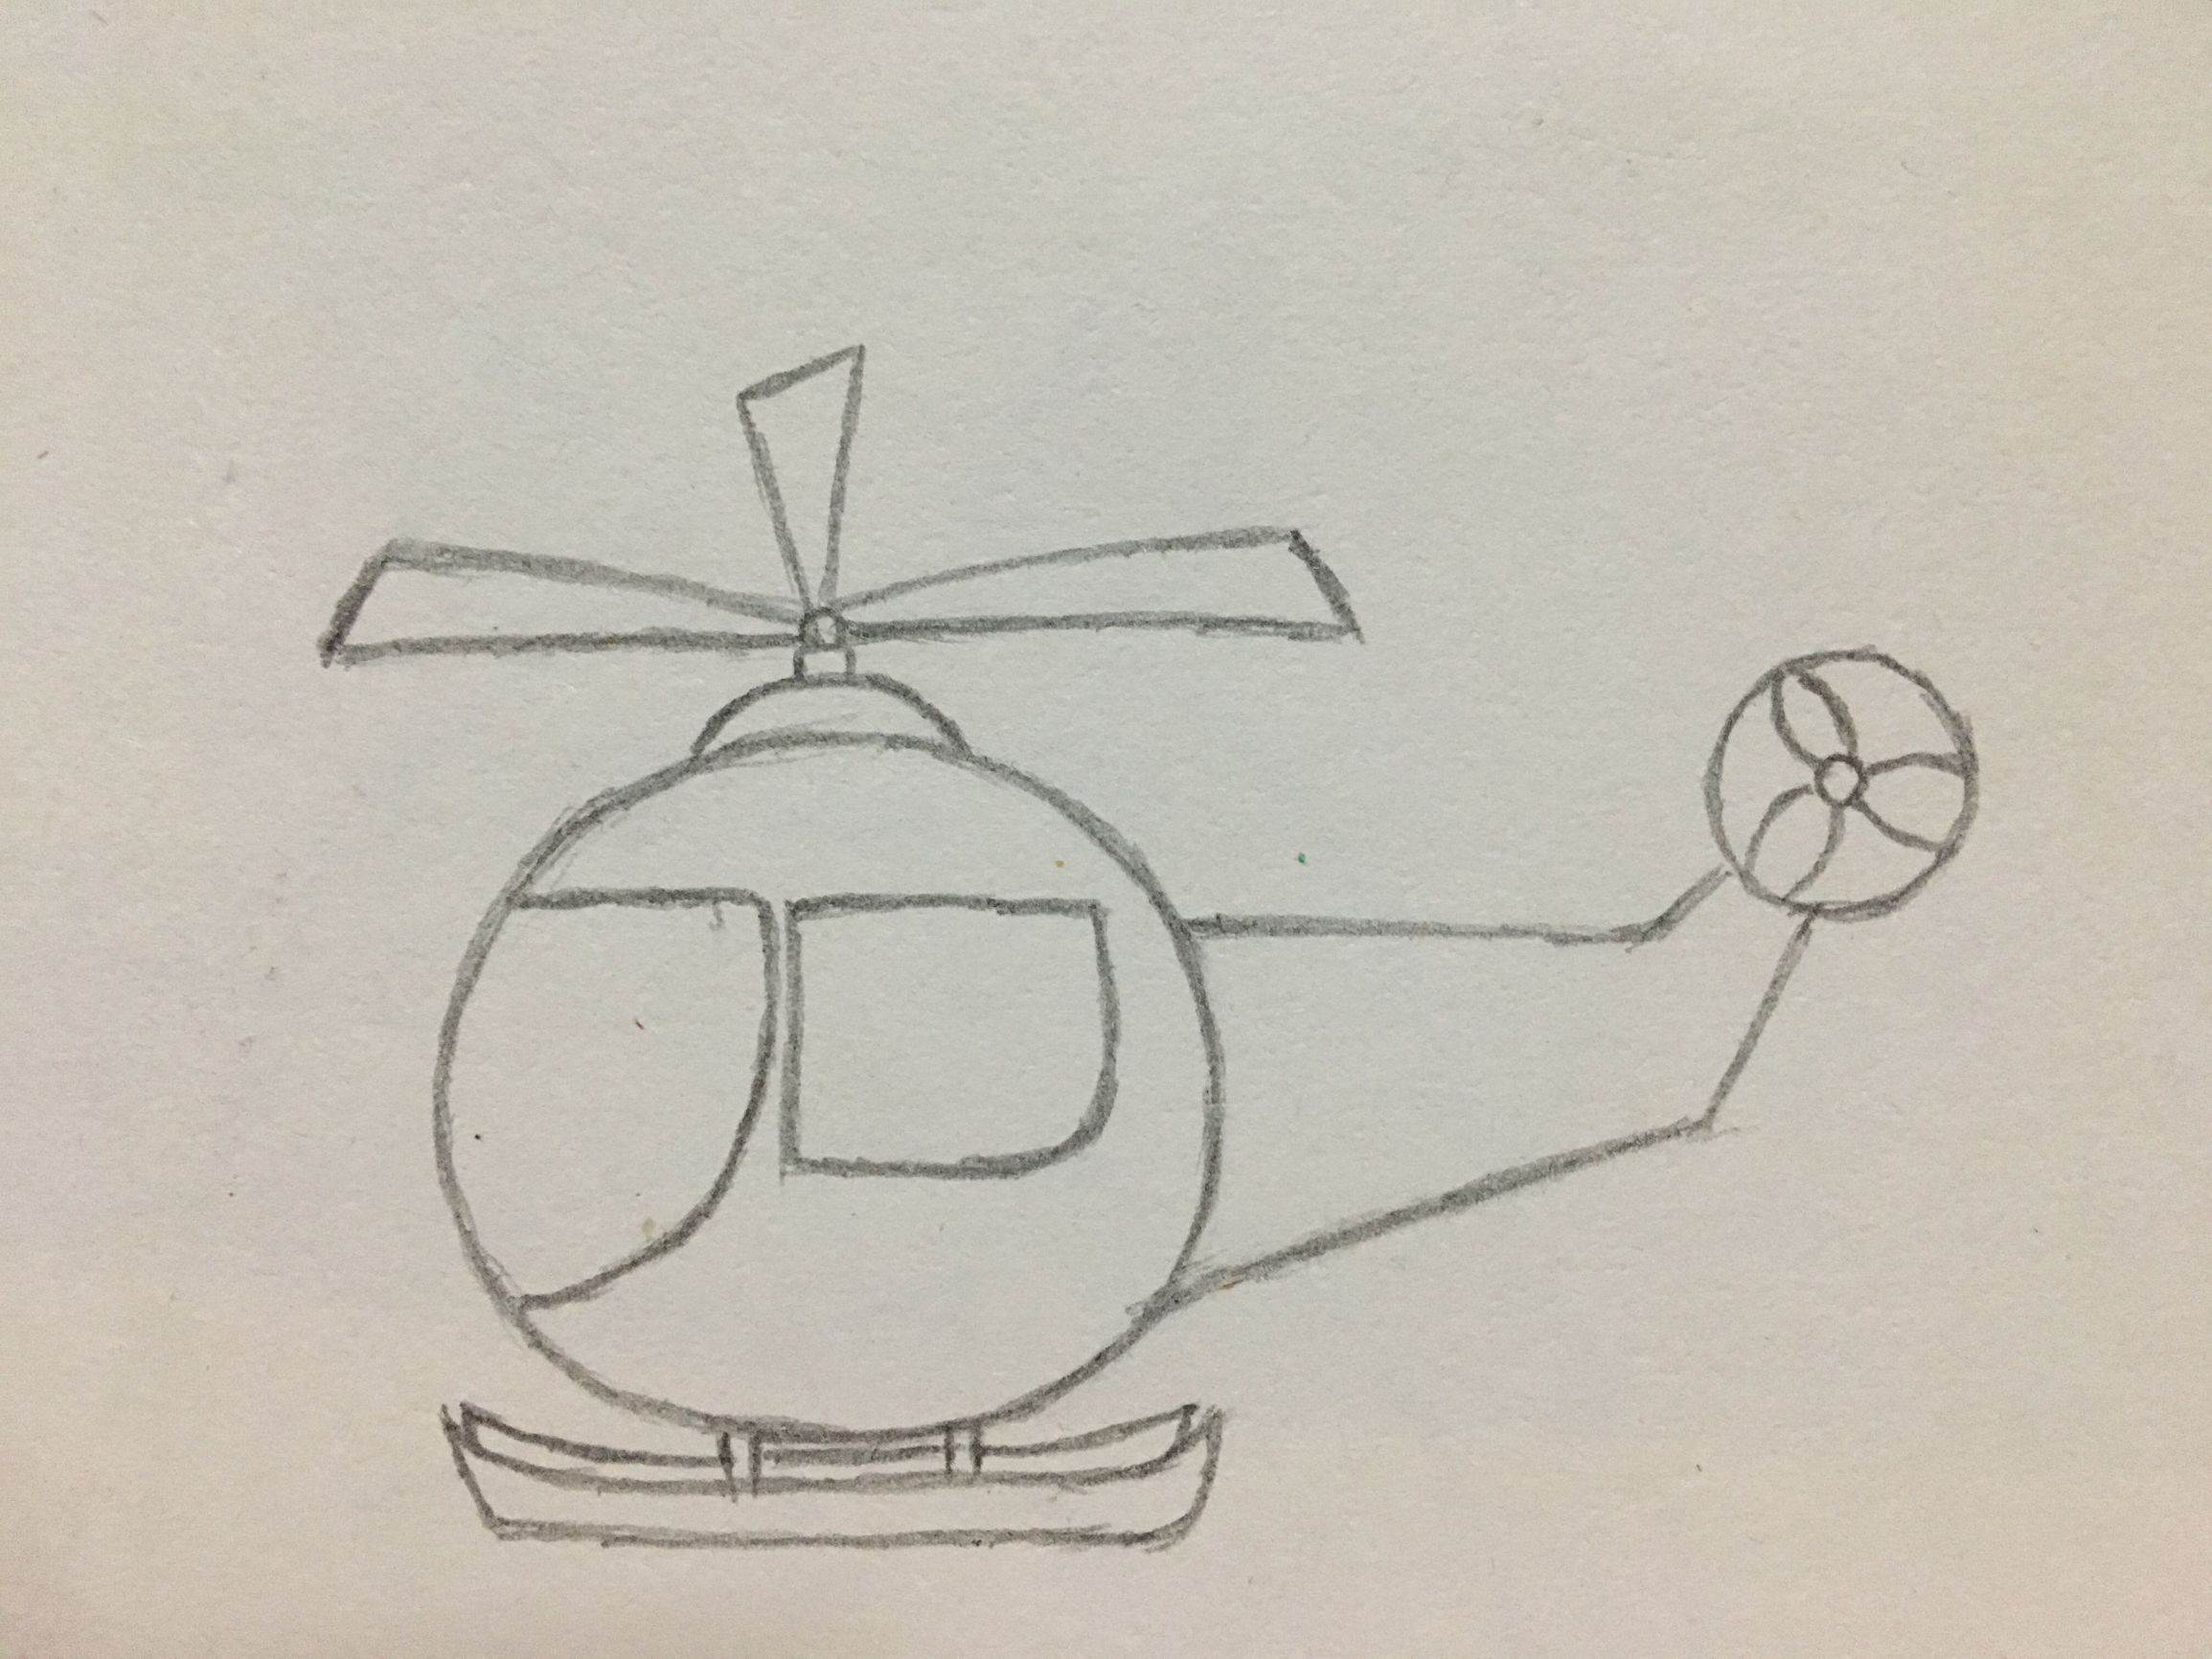 卡通直升机简笔画图片